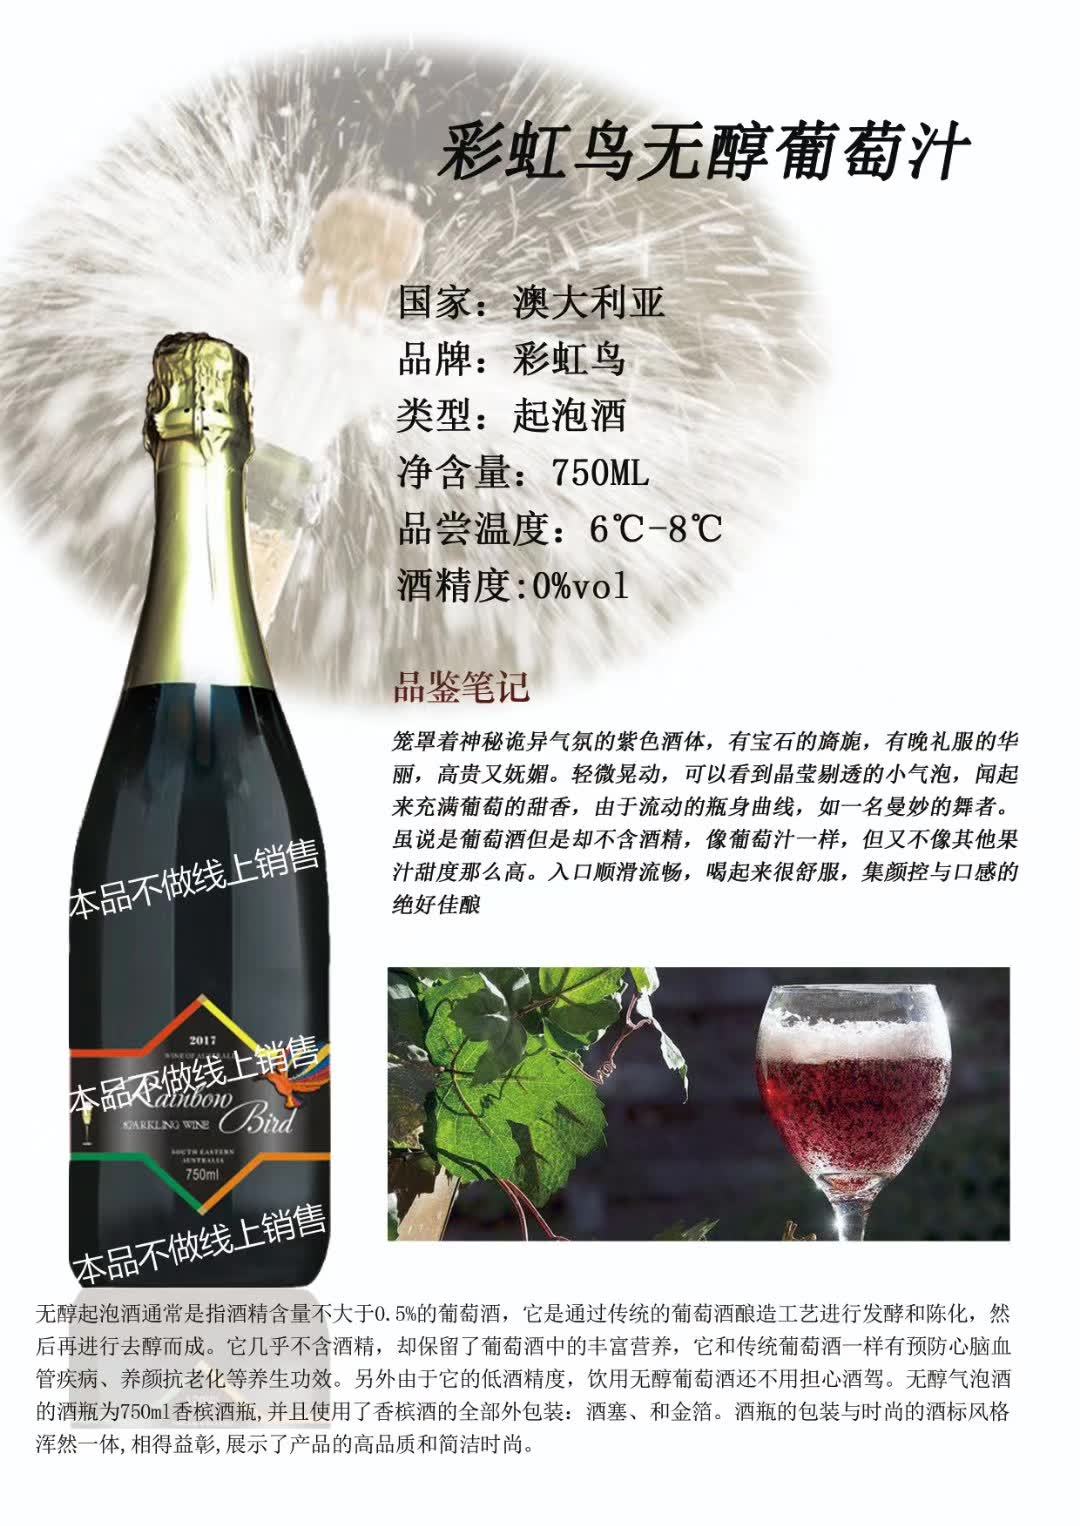 上海万耀南澳进口彩虹鸟系列无醇起泡酒不含酒精葡萄汁加盟代理